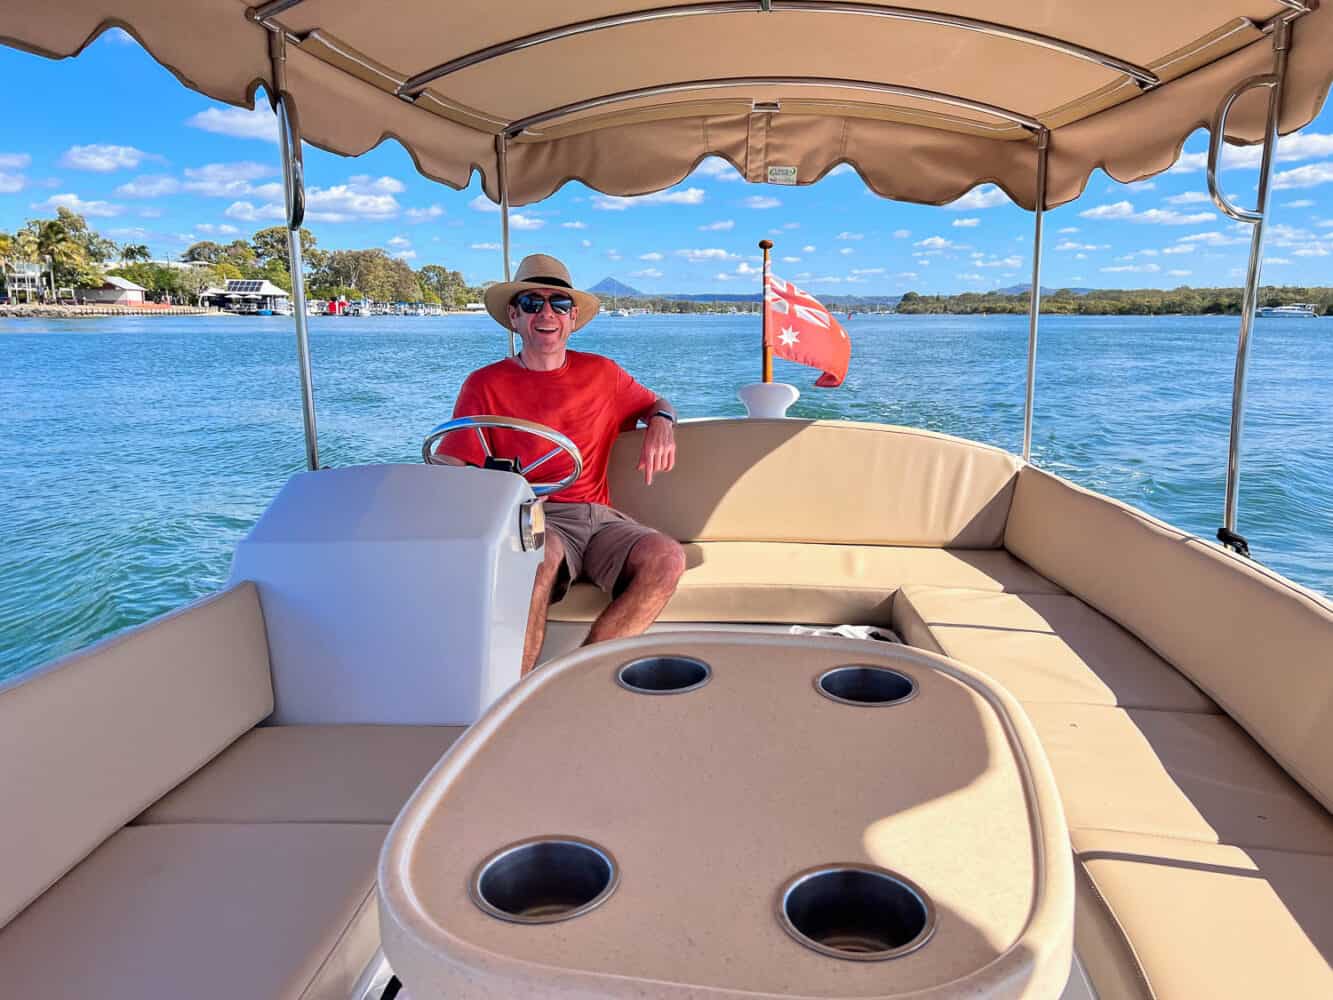 Simon in a hire boat, Noosa River, Queensland, Australia